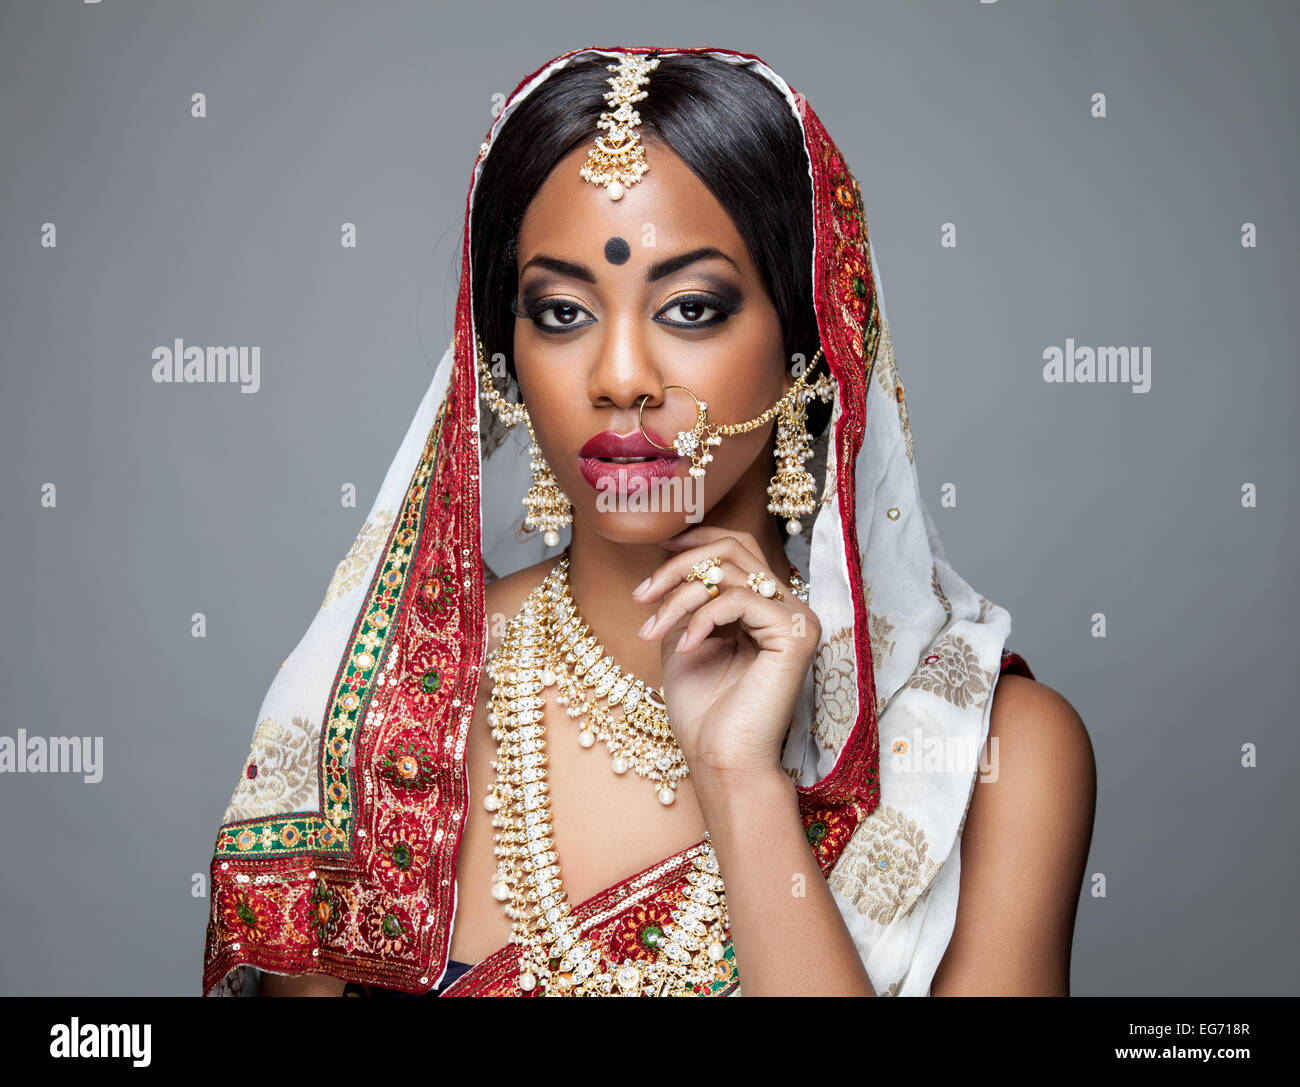 Esotica cucina indiana sposa vestito per cerimonia di nozze Foto Stock